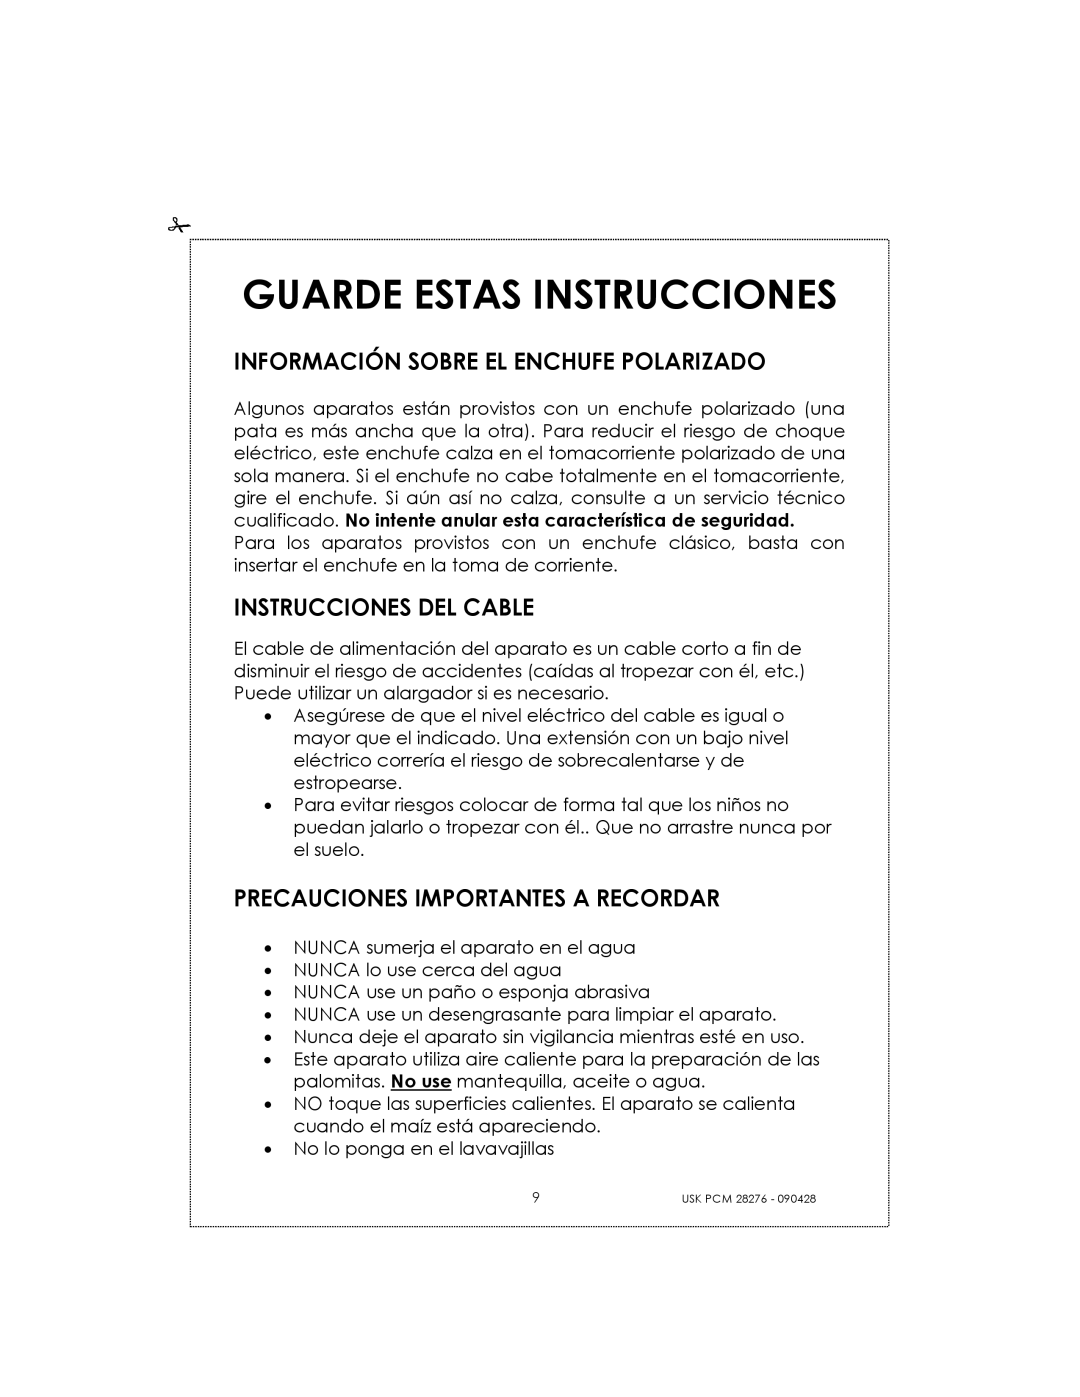 Kalorik USK PCM 28276 manual Guarde Estas Instrucciones, Información Sobre El Enchufe Polarizado, Instrucciones Del Cable 